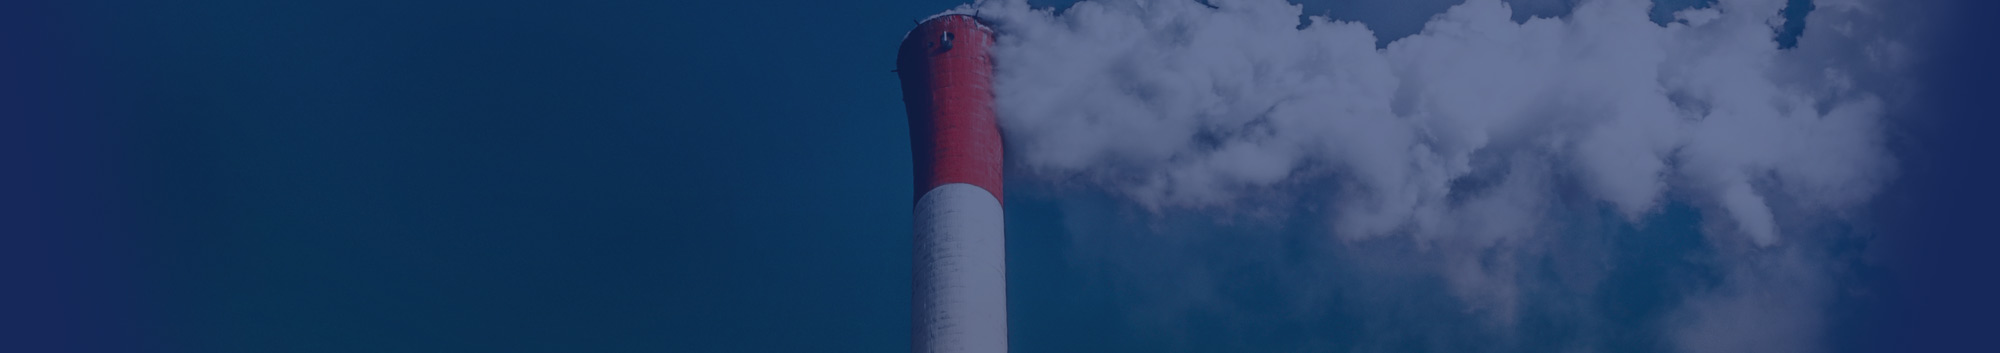 Smoke stack - environmentally certified